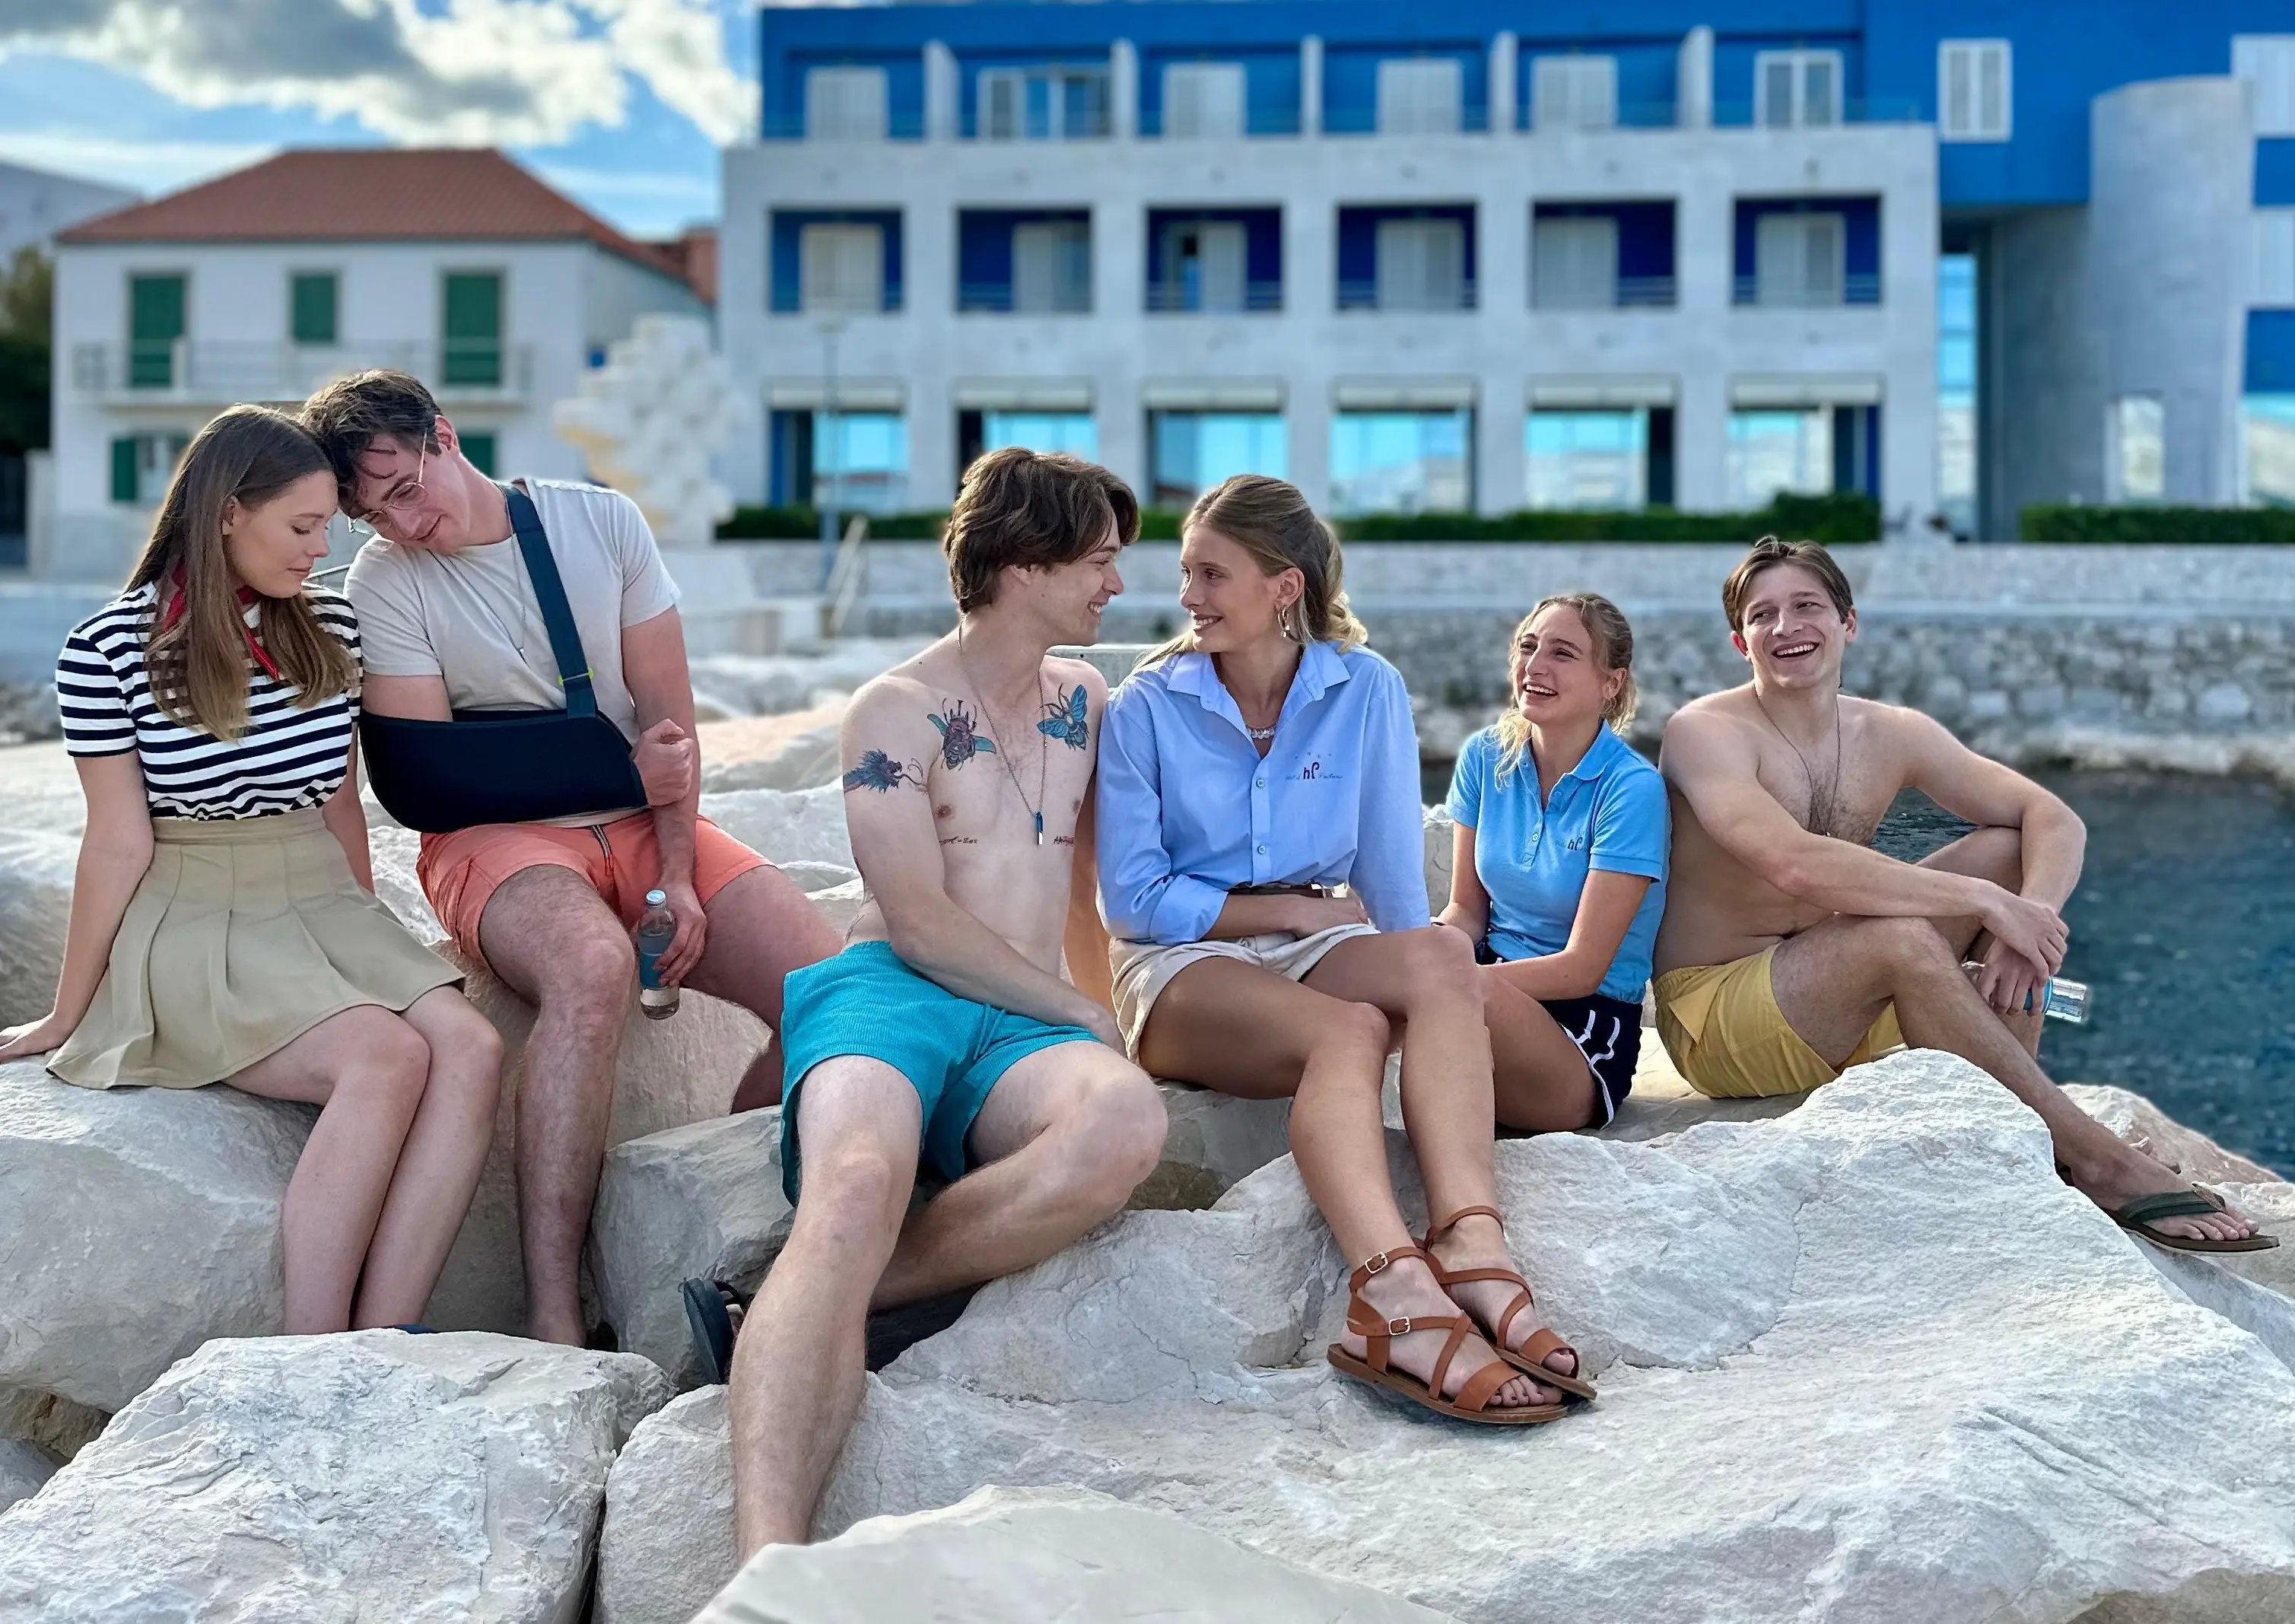 Recenze: Lež na pláži je přehlídkou marnosti a křeče. Další seriál z Chorvatska postrádá jakýkoliv smysl